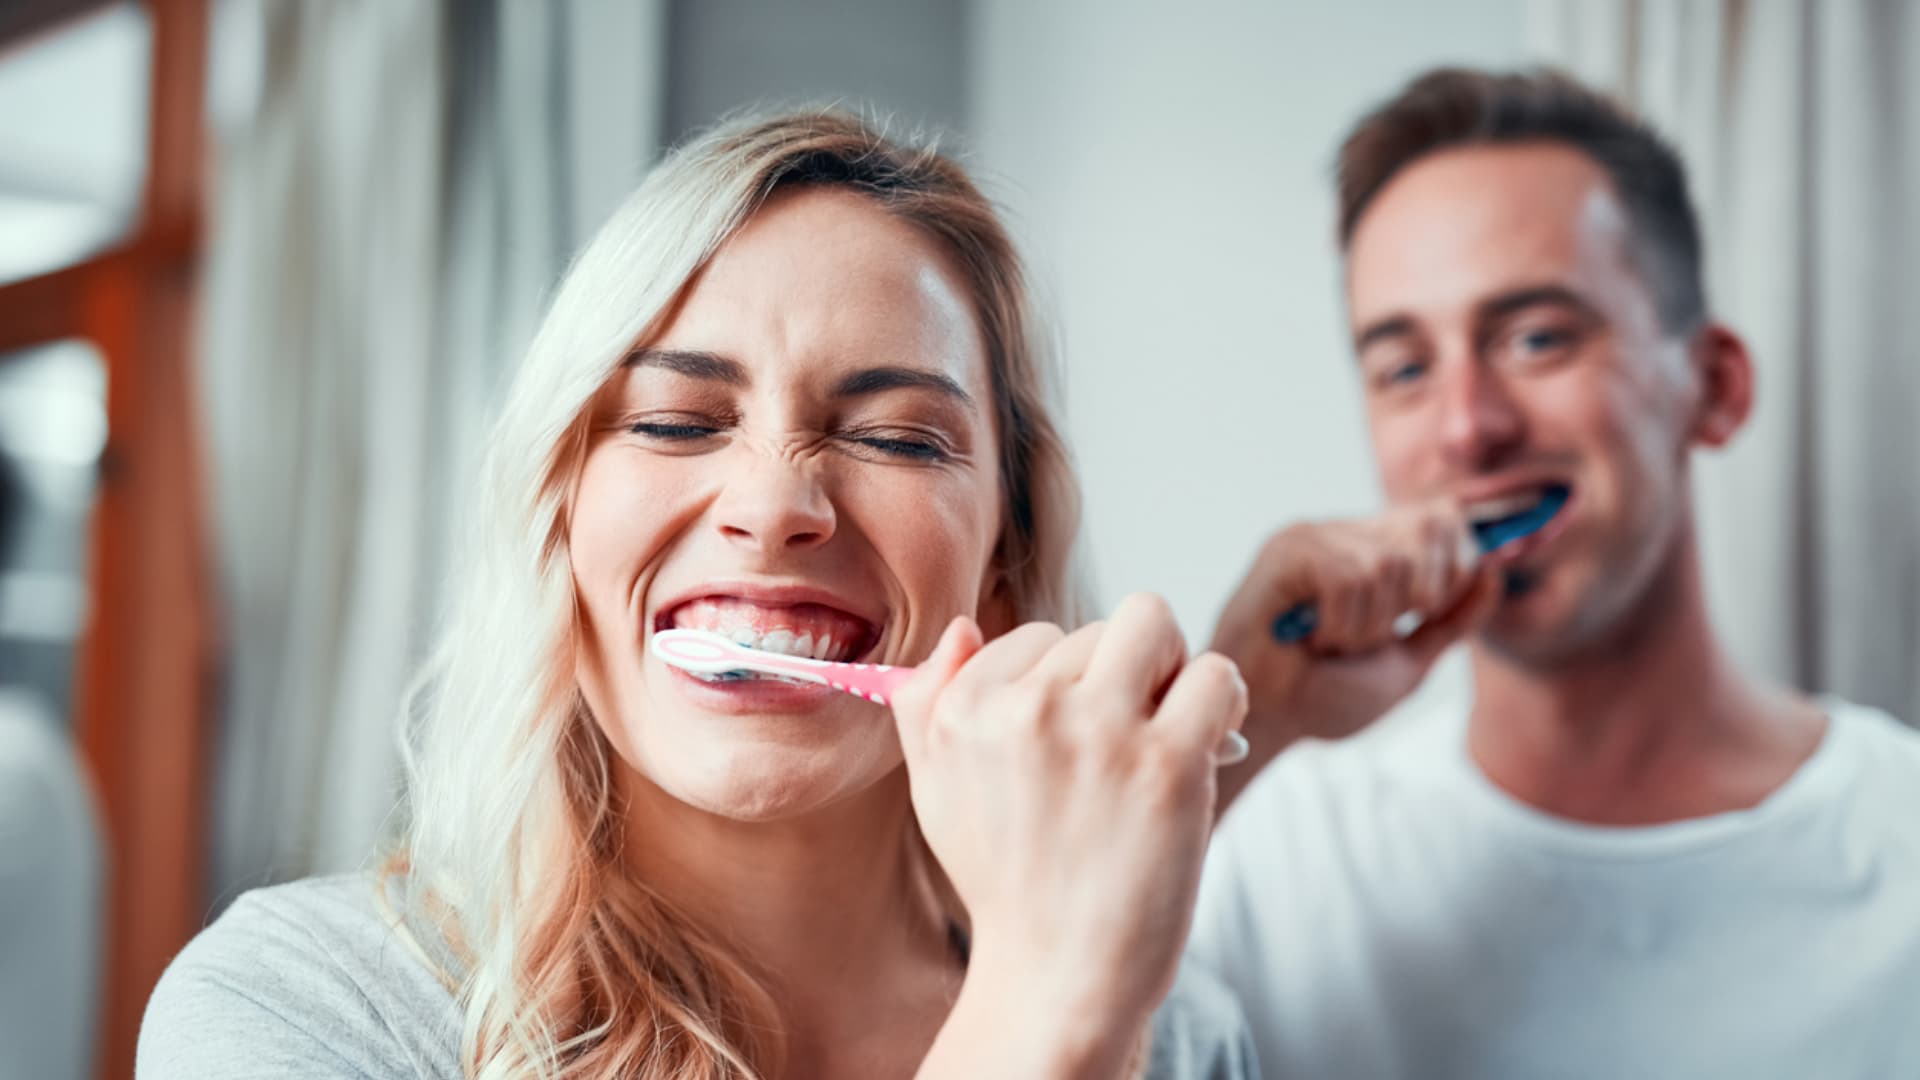 Víte, jak si nejlépe čistit zuby? Podle lékaře je pro každého postup individuální, stejně jako vybrané pomůcky.